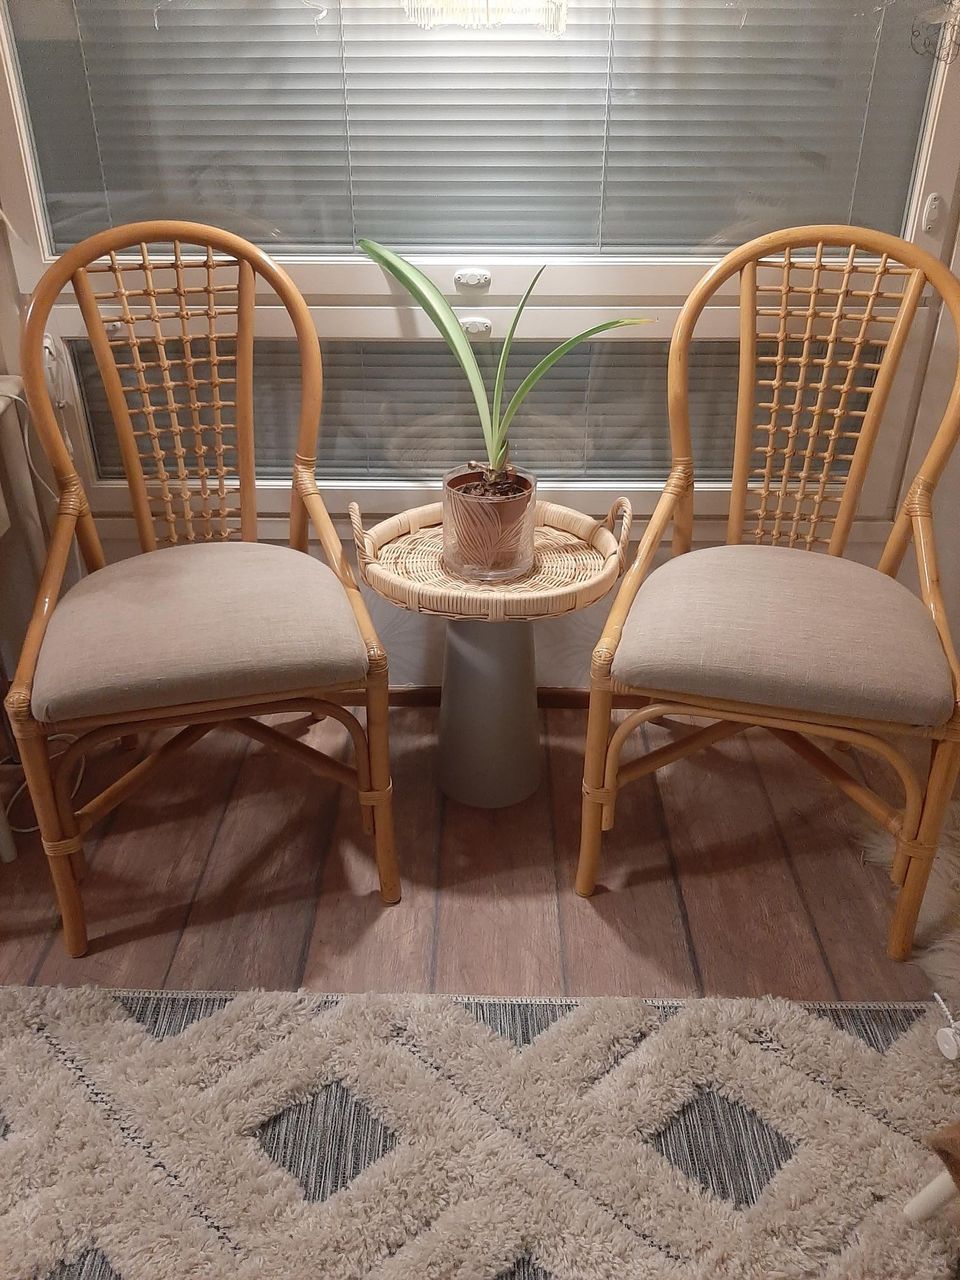 Pöytä ja tuoli